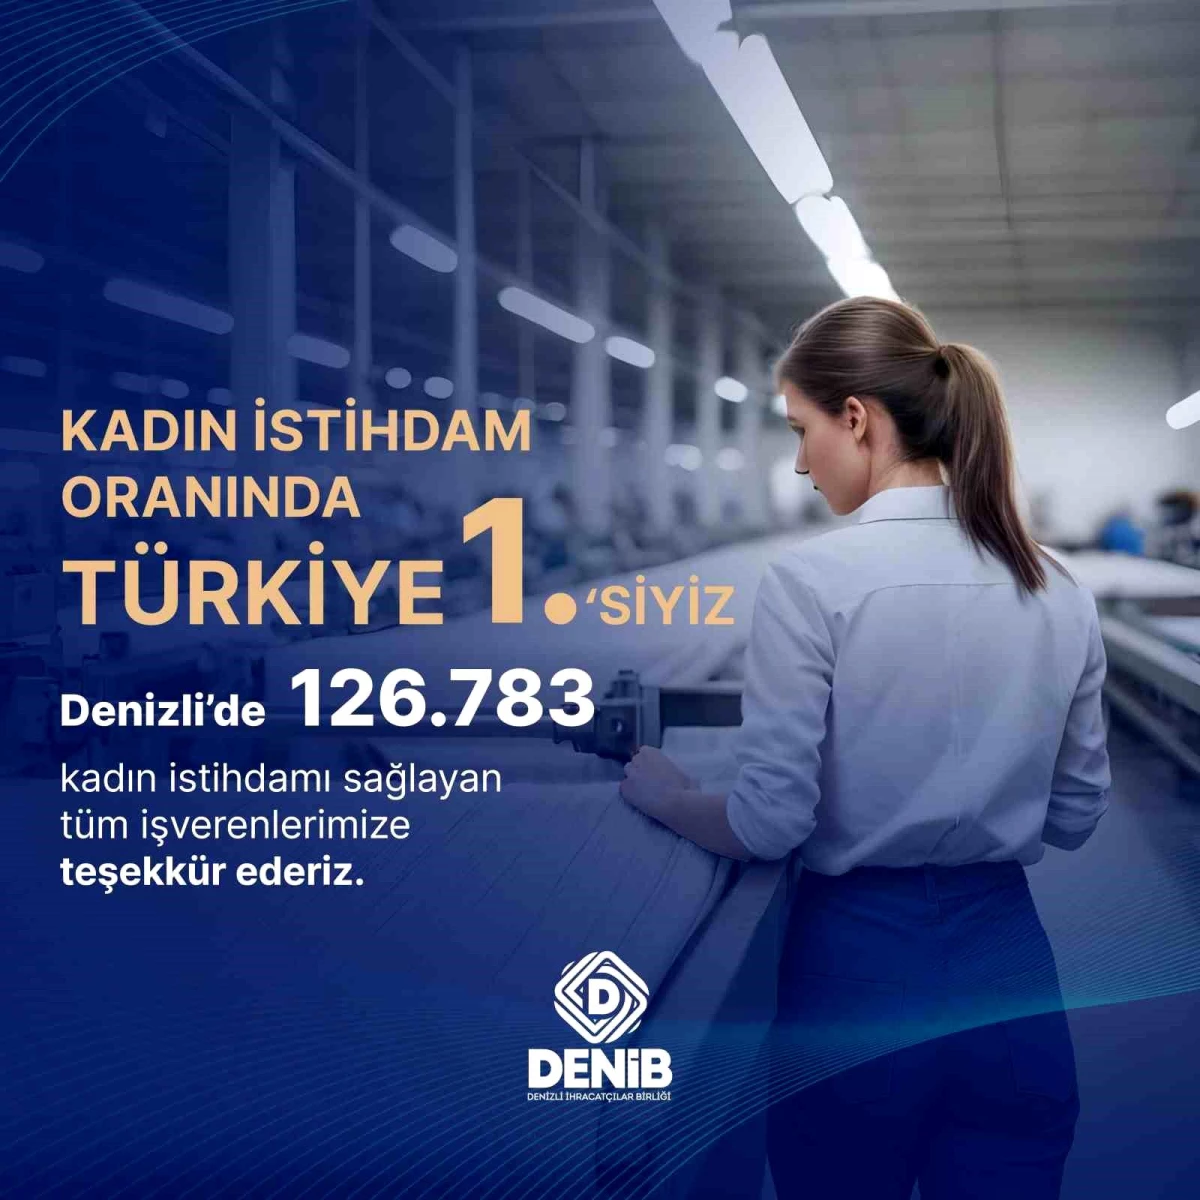 Denizli\'de Kadın İstihdamı Türkiye\'de En Yoğun